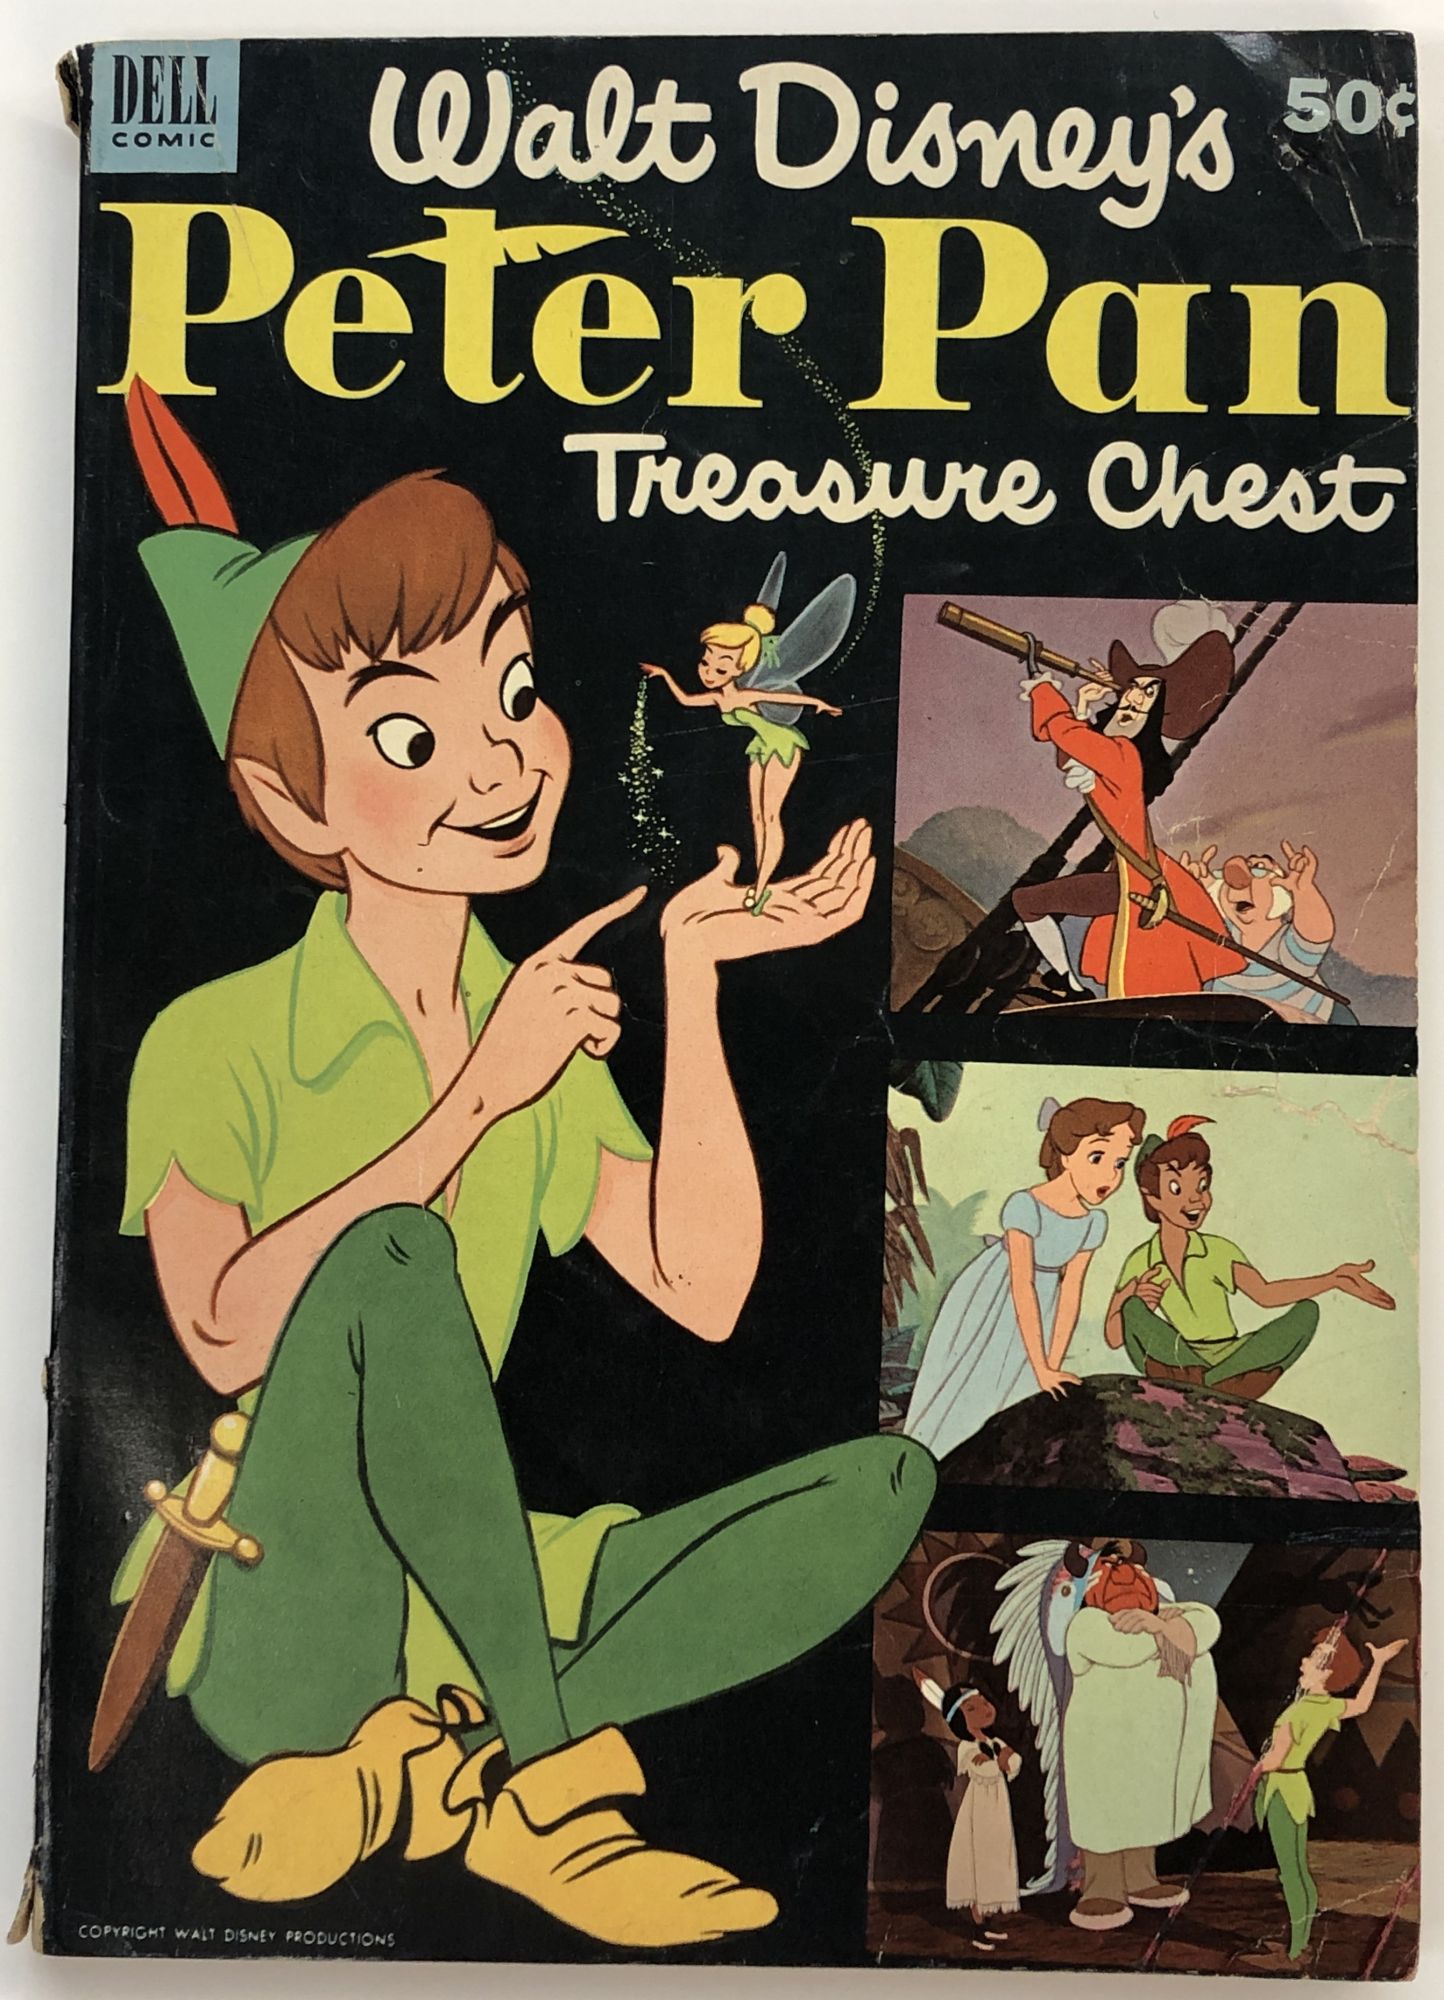 Peter Pan hidden treasure bra (1953) : r/vintageads